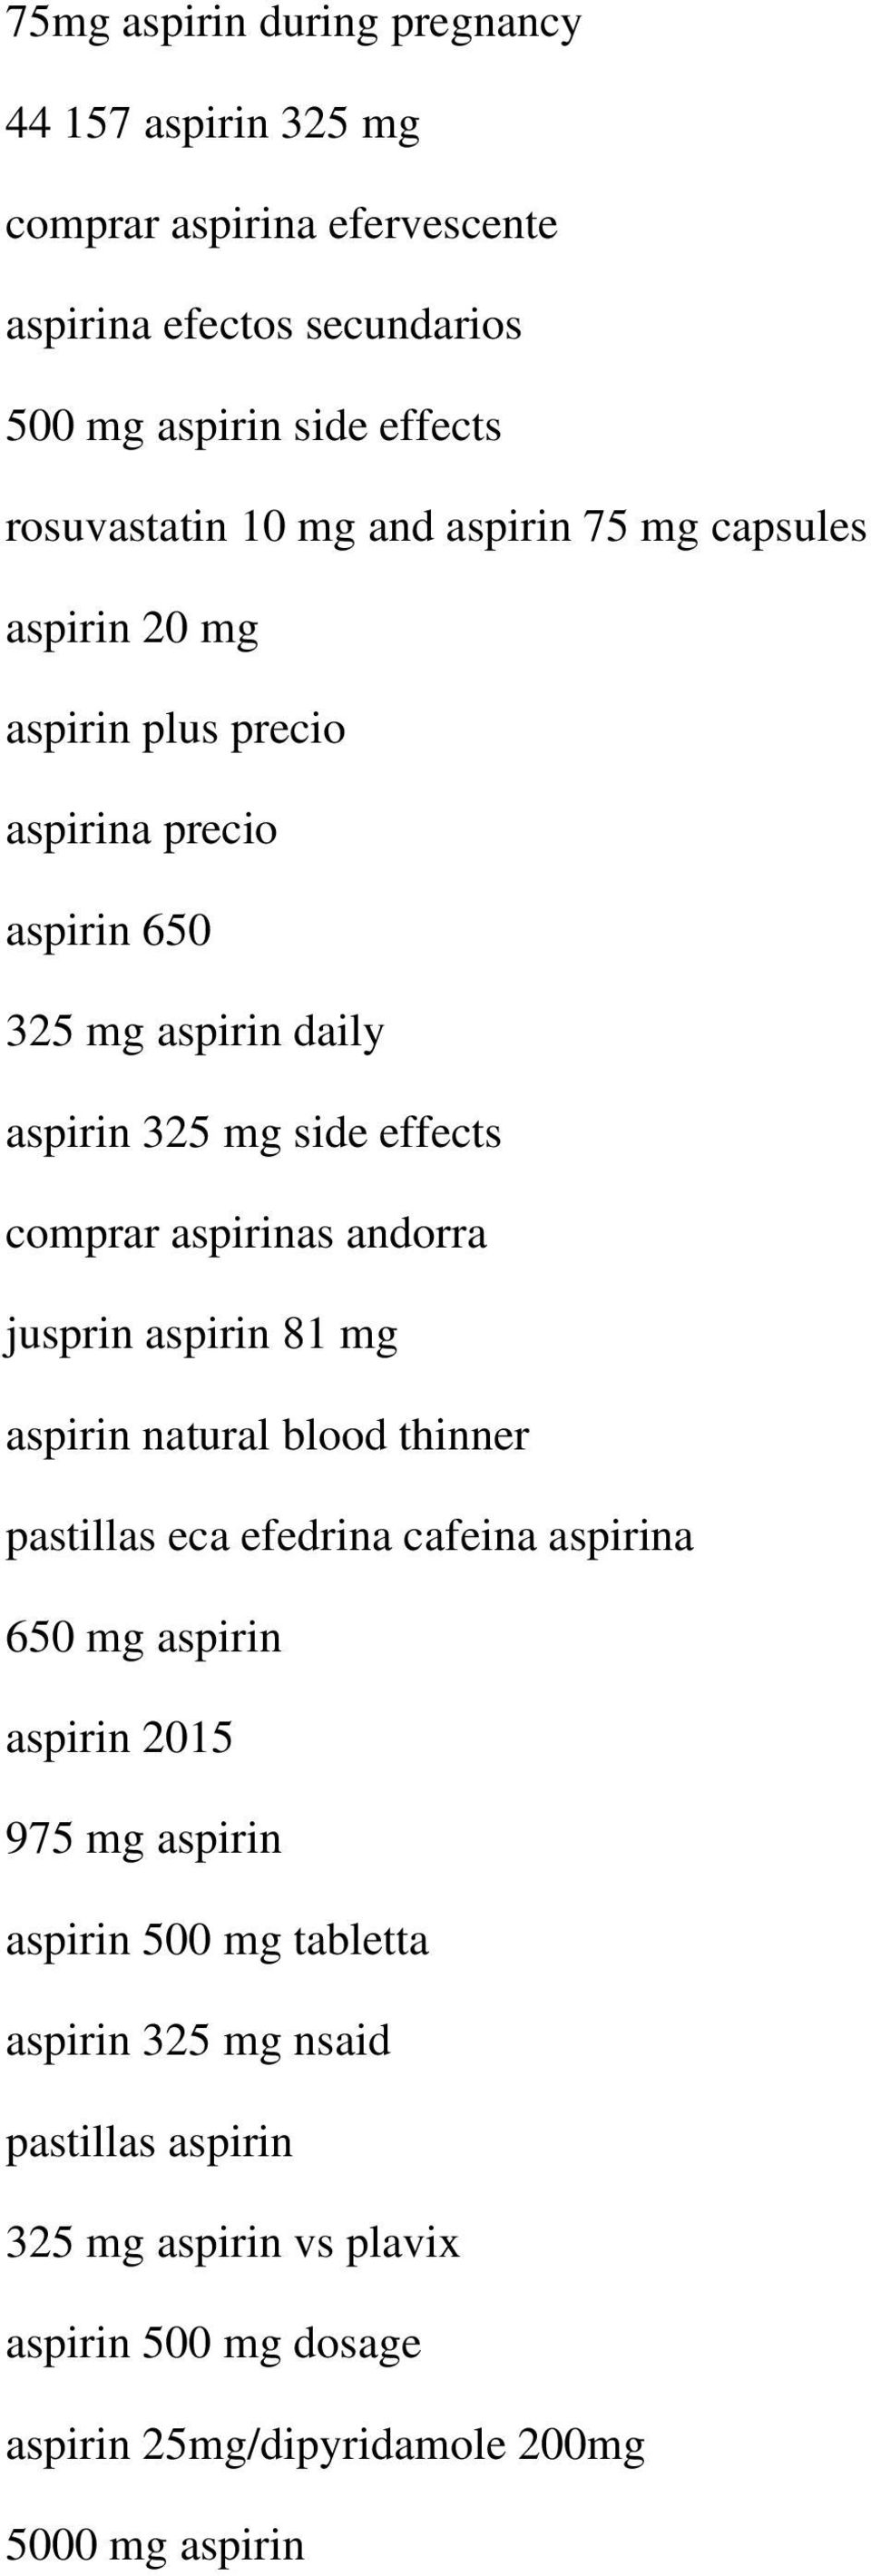 aspirinas andorra jusprin aspirin 81 mg aspirin natural blood thinner pastillas eca efedrina cafeina aspirina 650 mg aspirin aspirin 2015 975 mg aspirin